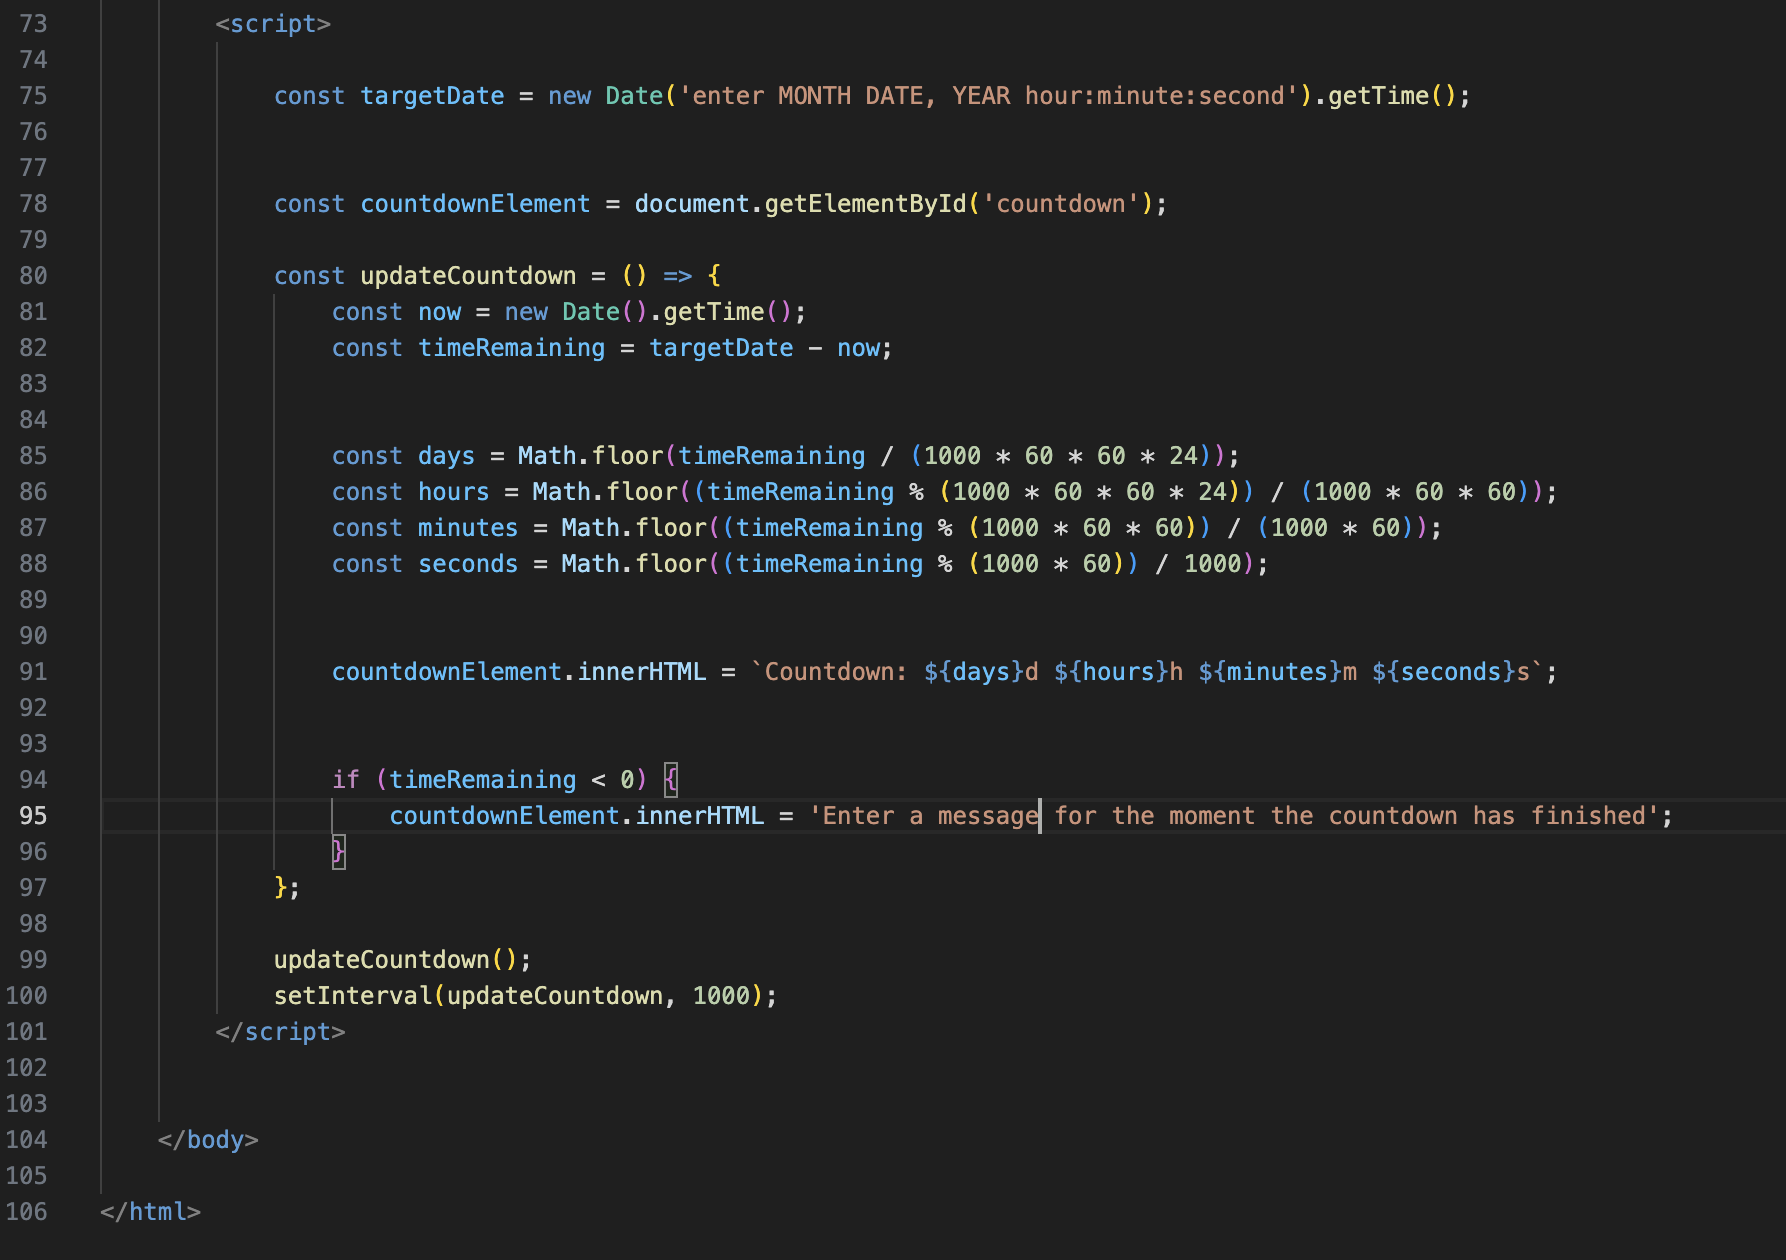 screenshot of code